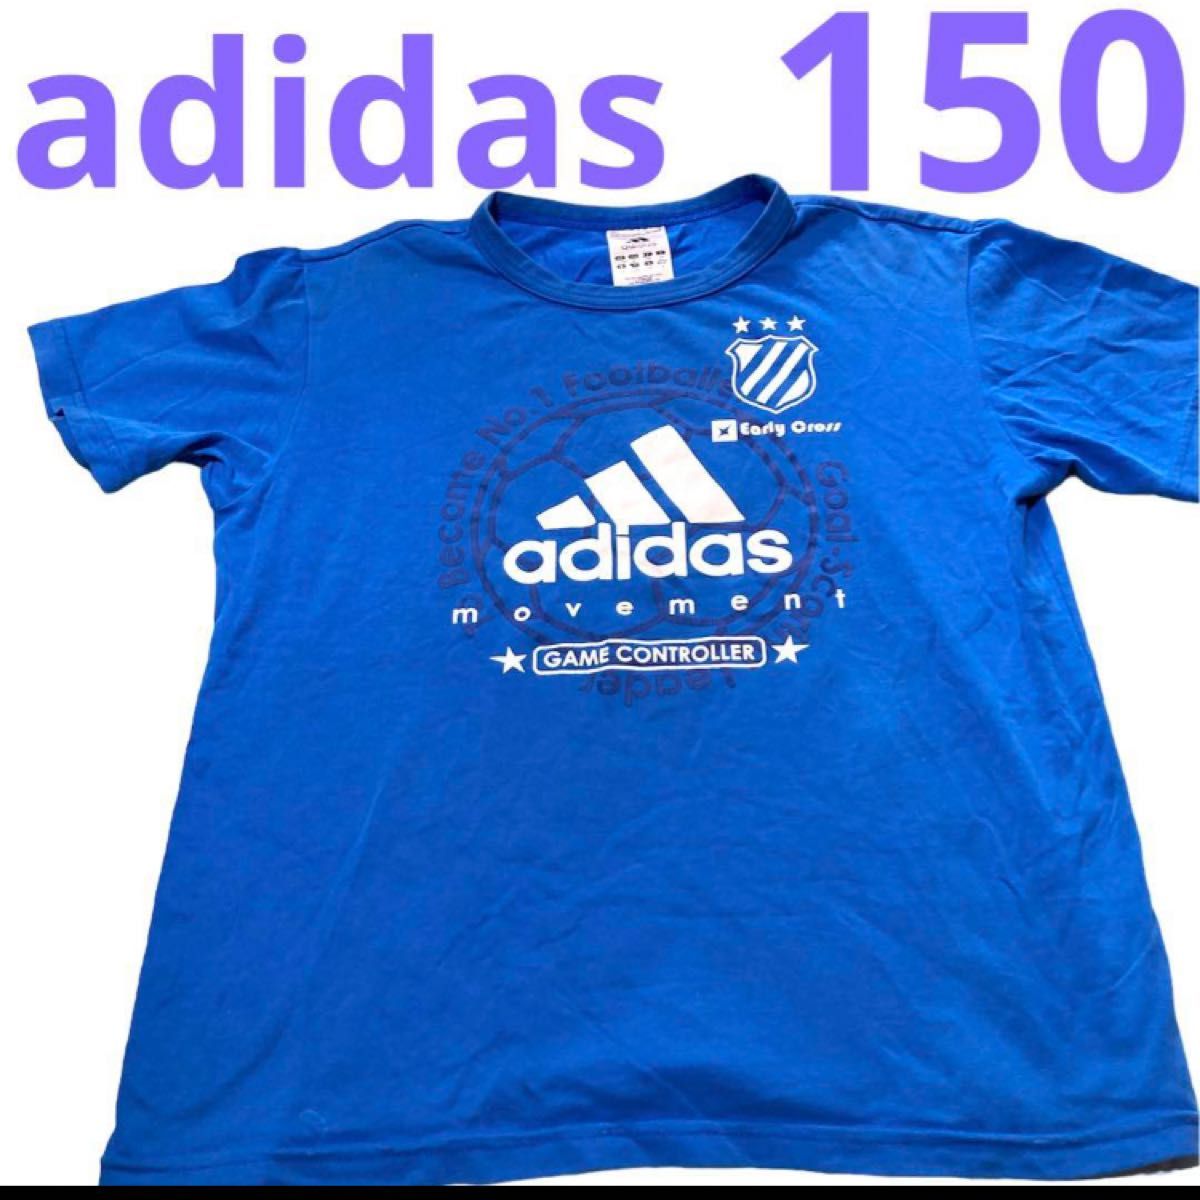 adidas 150 ブルー Tシャツ 半袖 半袖Tシャツ アディダス サッカー Jリーグ トレーニングウェア